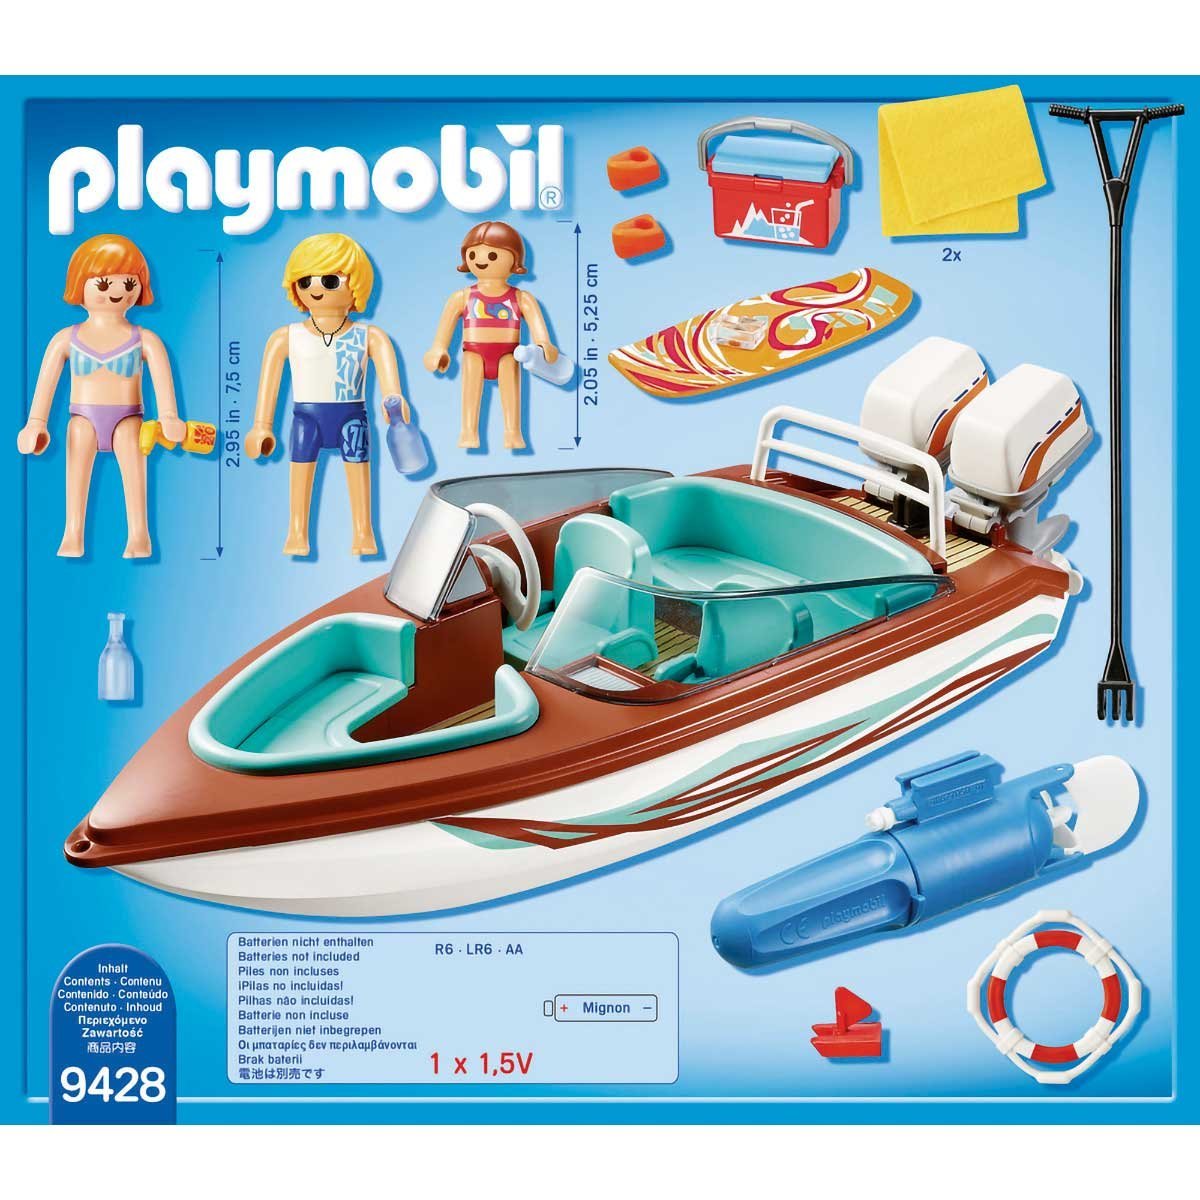 Lancha con Motor Submarino Playmobil